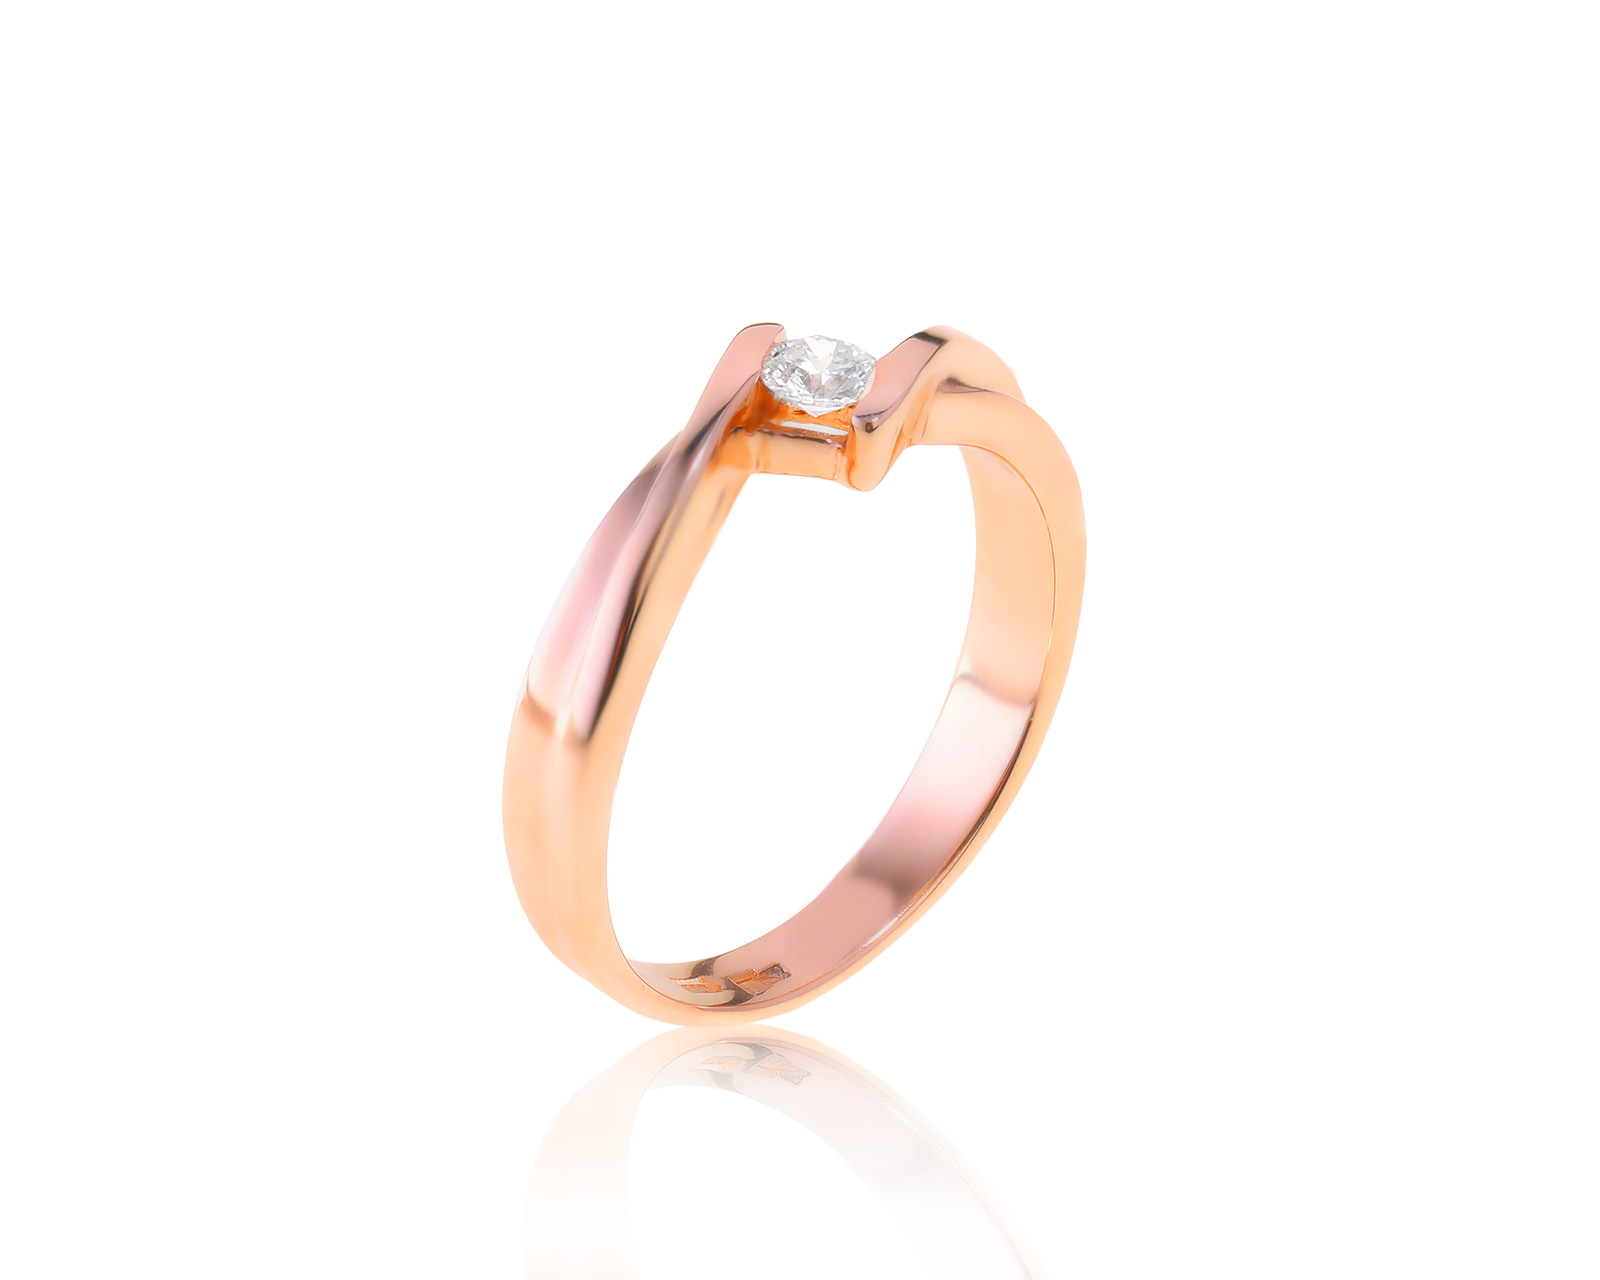 Изящное золотое кольцо с бриллиантом 0.15ct 250122/1